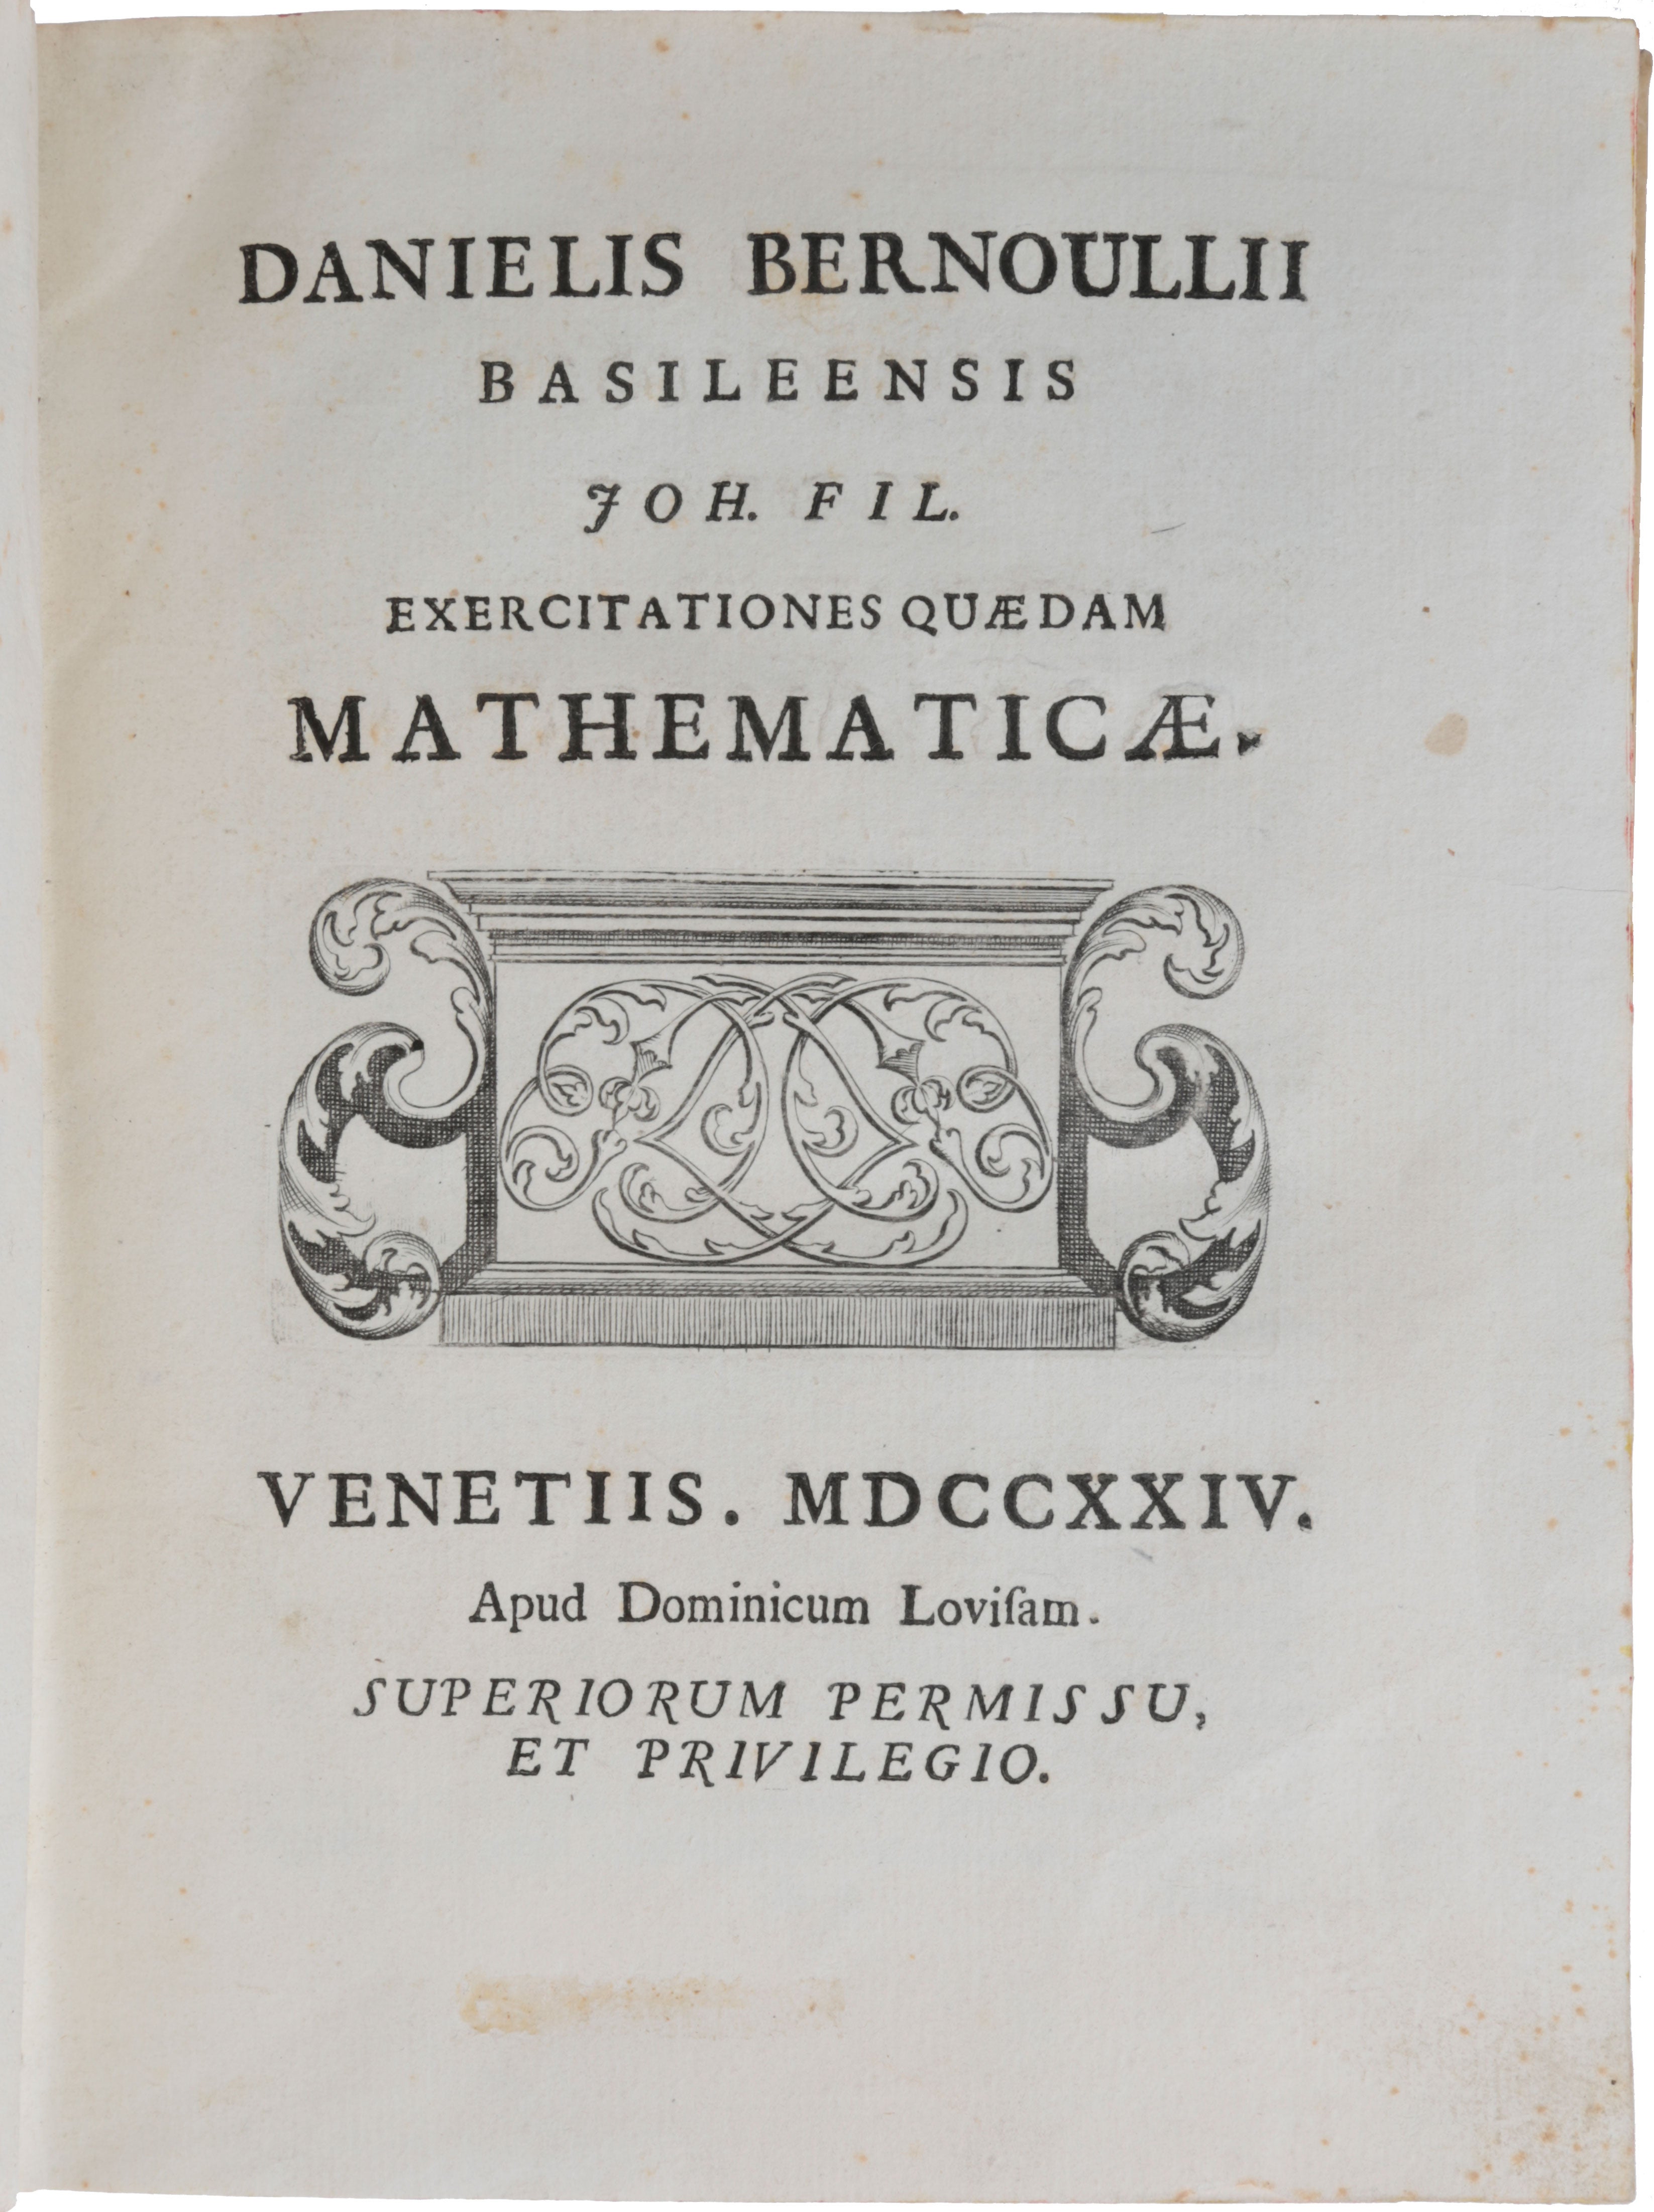 Item #5535 Exercitationes quaedam mathematicae. Venice: Domenico Louvisa, 1724. [Bound with:] SUZZI, Giuseppe. Disquisitiones mathematicae. Venice: Domenico Louvisa, 1725. [Bound with:] DA RIPA [or RIVA], Lodovico. Miscellanea. (1. De Meteoro ignito, quod in Agro Tarvisino apparuit. 2. De vi Vaporum in Hygrometris. 3. Demonstrationes Theorematum ad quadraturas spectantium. A summao geometra Joah: Bernoullio. 4. Prolusio habita in Gymnasio Patavino). Venice: Domenico Louvisa, 1725. [Bound with:] MICHELOTTI, Pietro Antonio. Apologia in qua summum geometram Jo: Bernoullium motricis fibrae in musculorum motu inflatae curvaturam rectissimè supputasse defenditur, & Ric. Mead Georgii II. Magnae Britanniae Regis Archiatri longe eruditissimi objectionibus respondetur, ... Accedit rari ex utero morbi historia una cum necessariis medicis animadversionibus ab eodem Michelotto perscripta. Venice: Gabriel Hertz & Giovanni Manfrè, 1727. Daniel BERNOULLI.